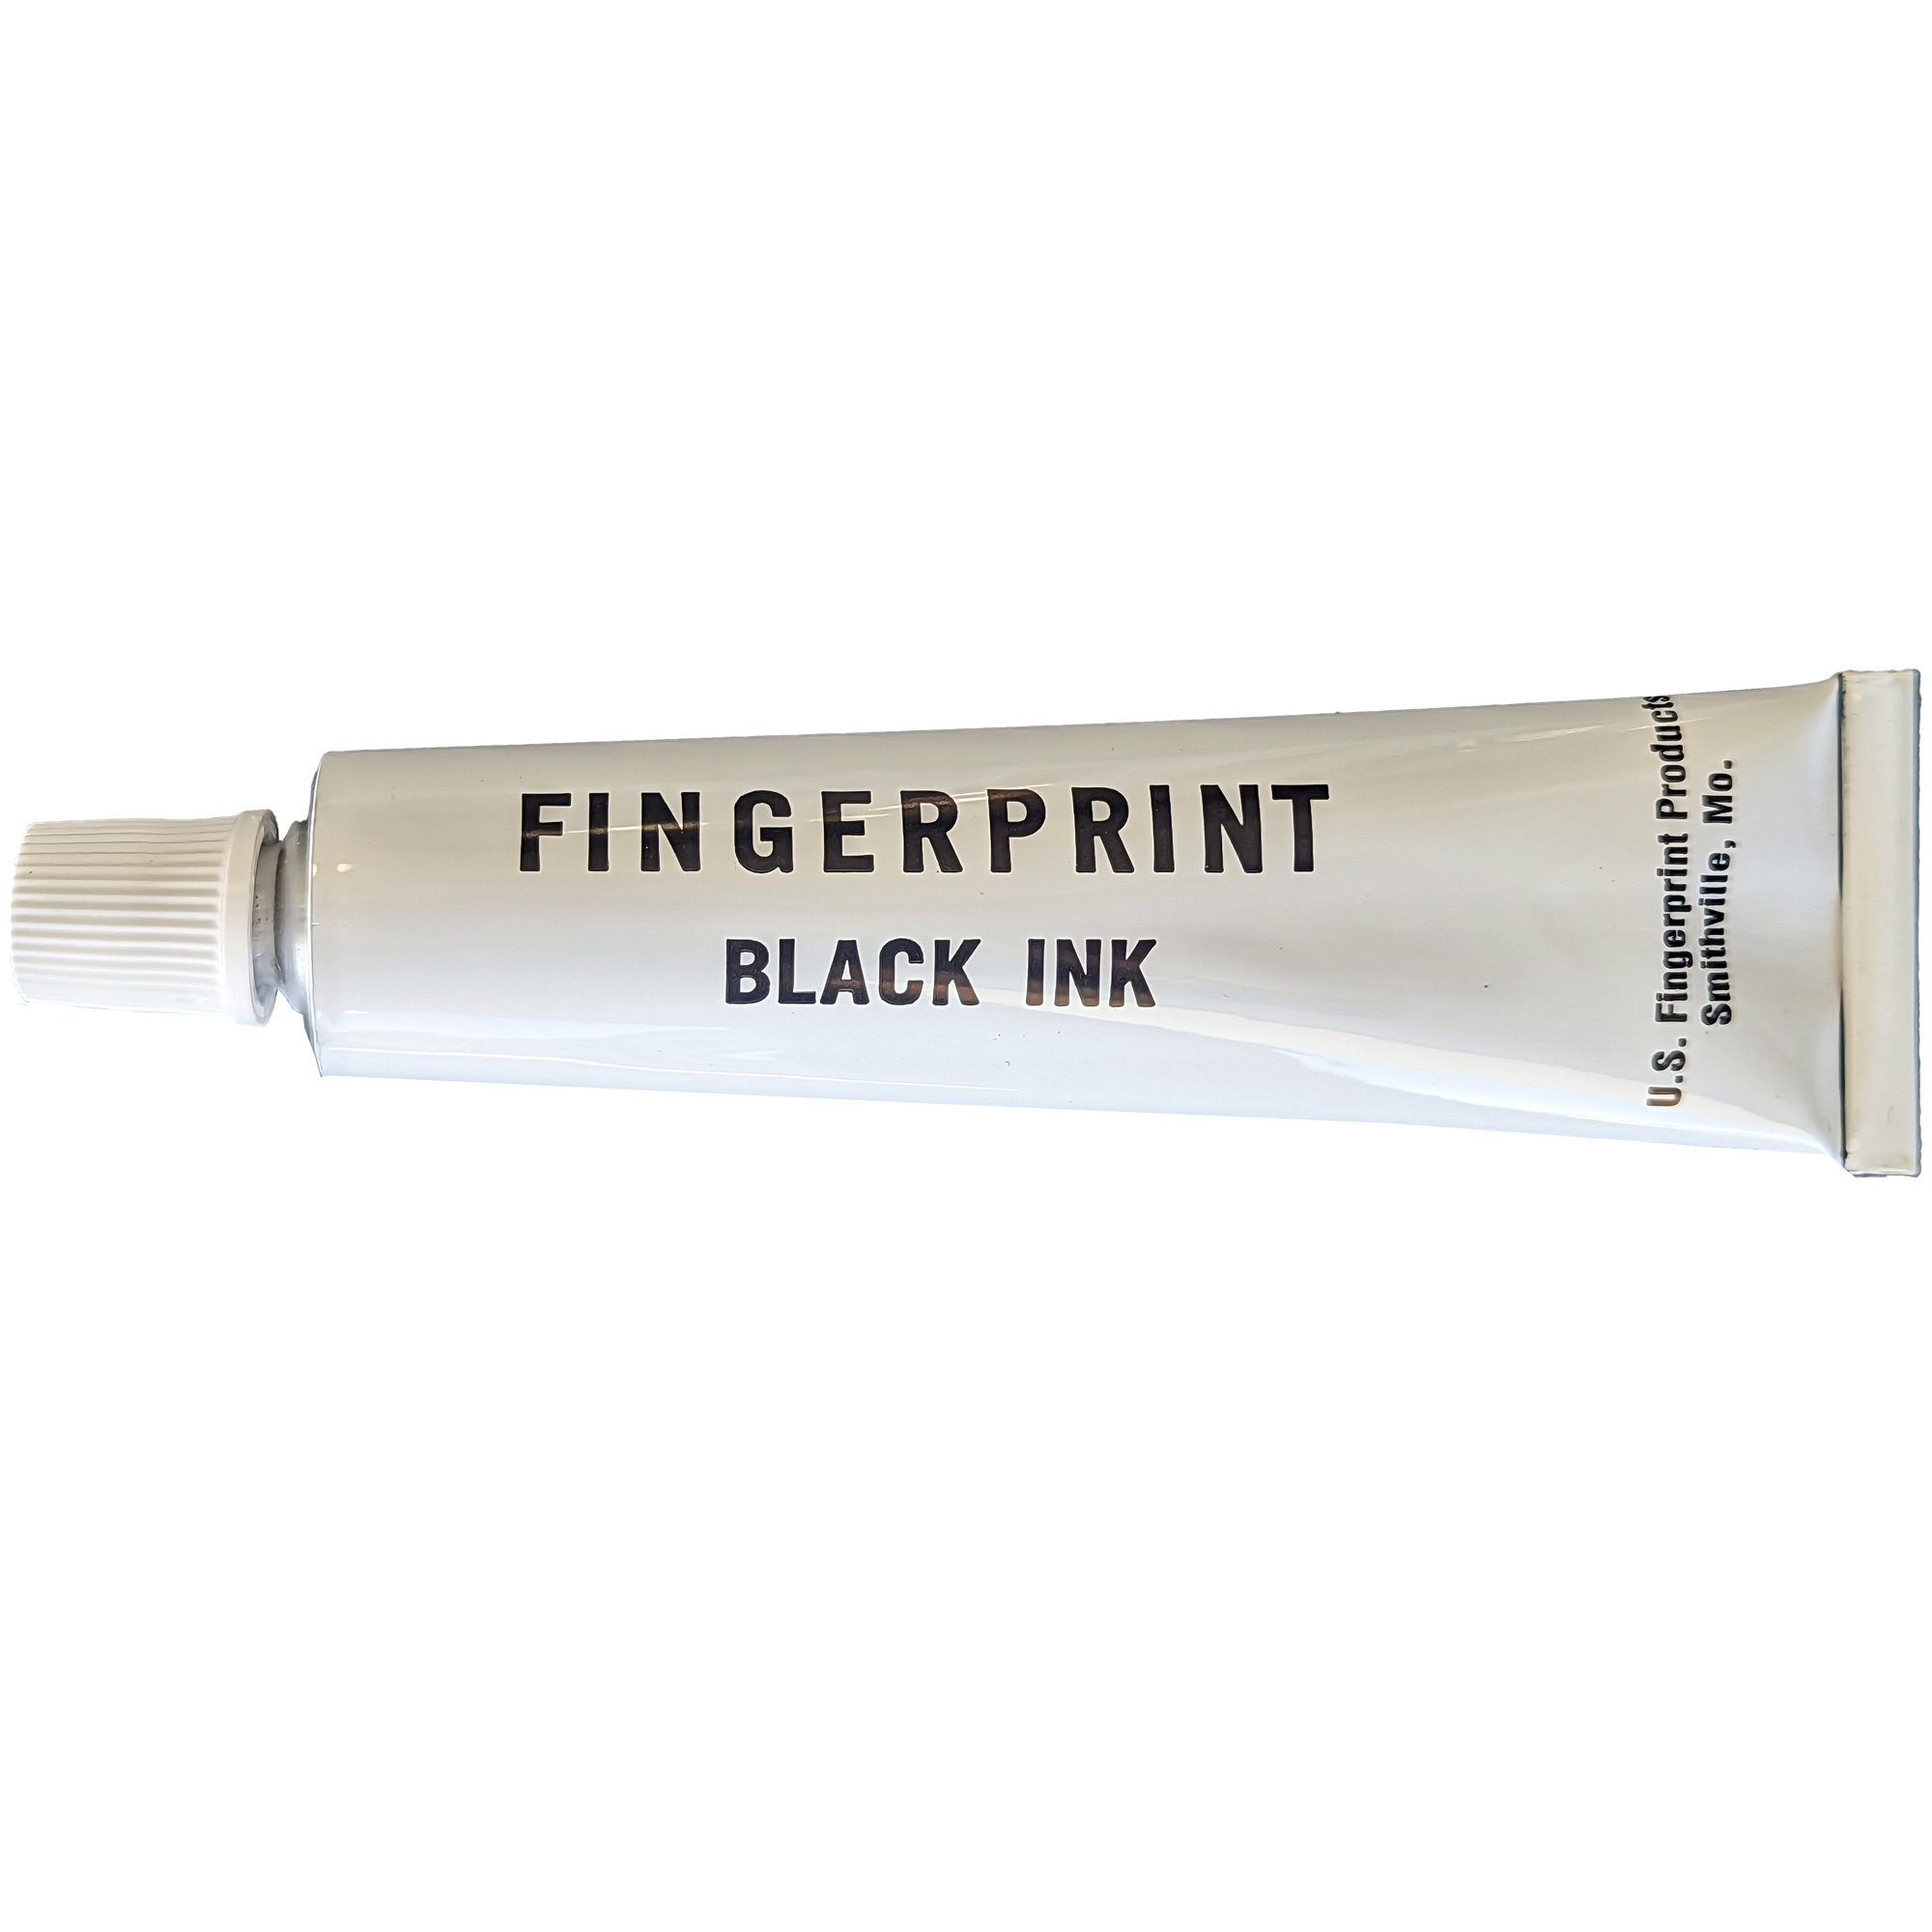 Fingerprint Ink - 4 oz